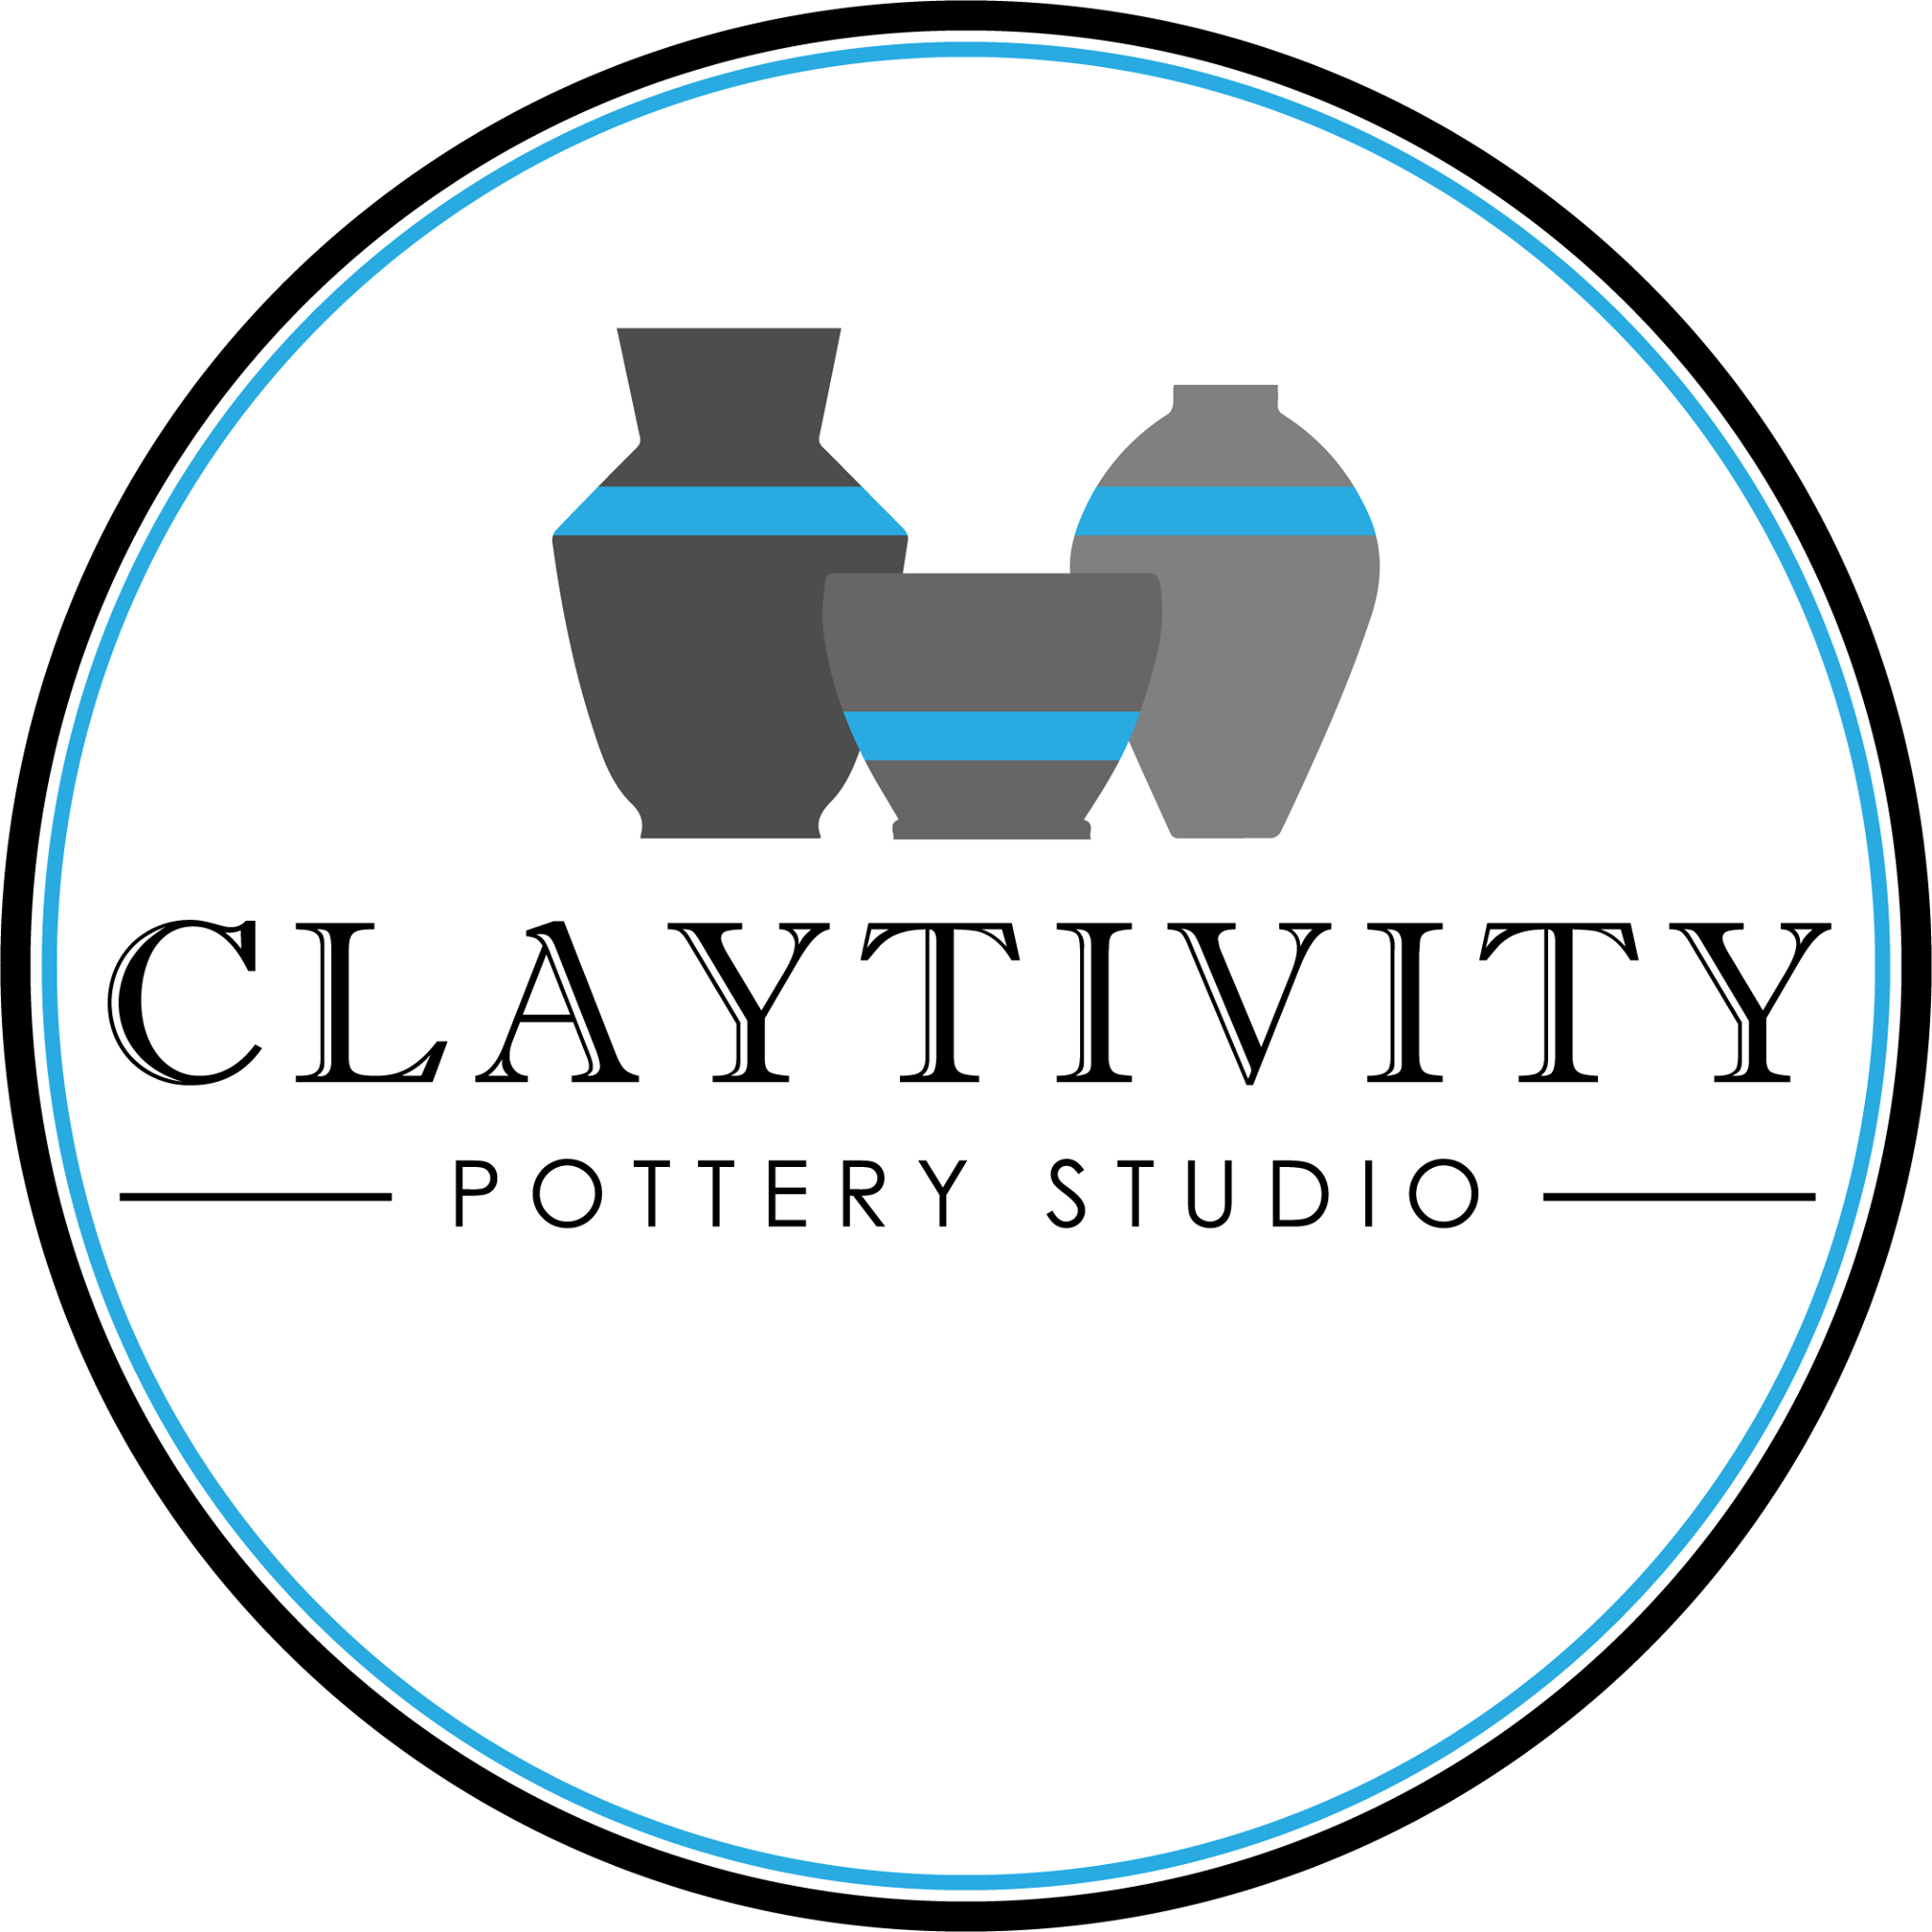 Company logo of Claytivity Pottery Studio